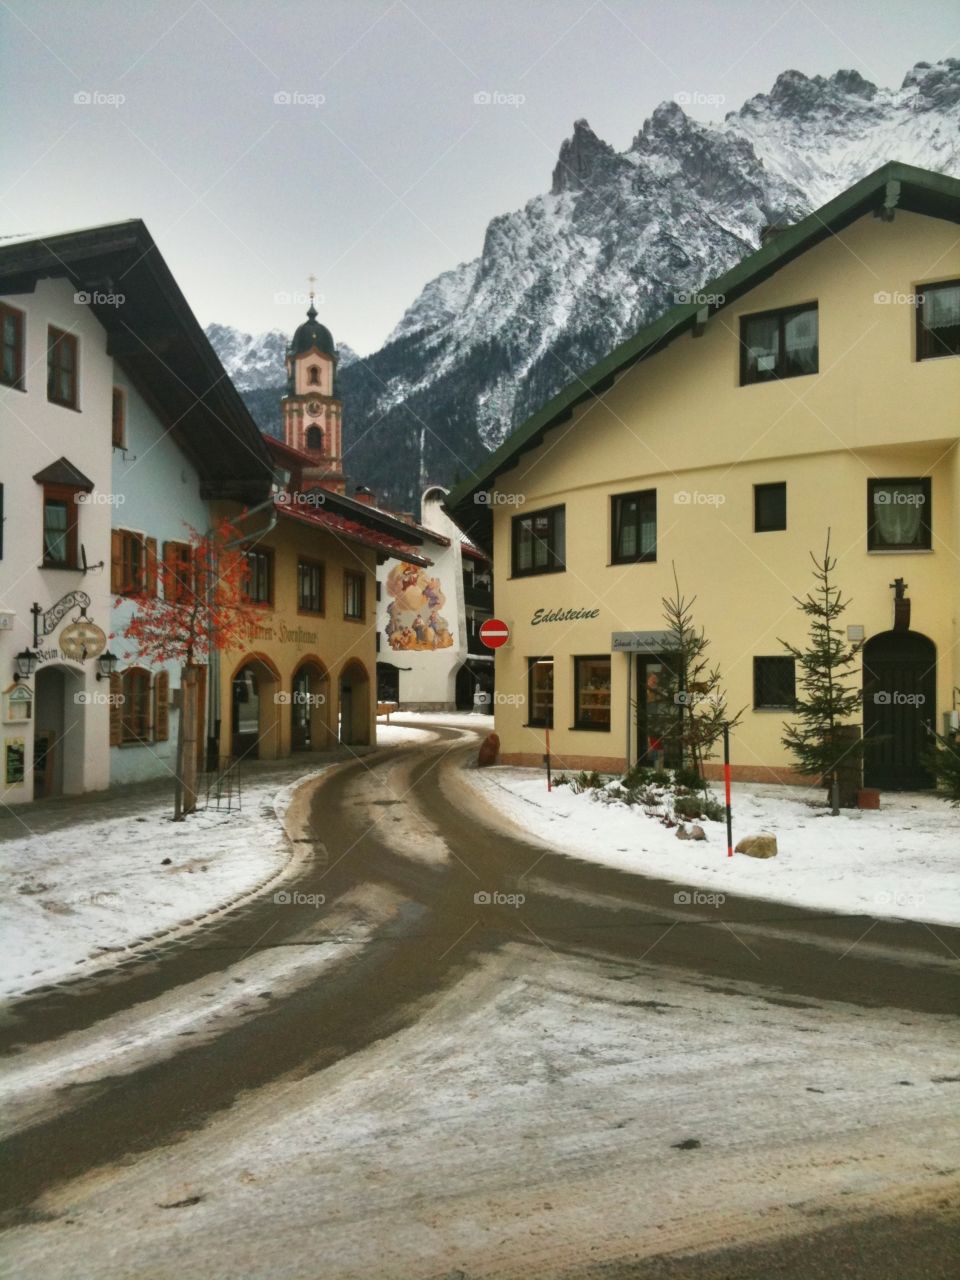 German village